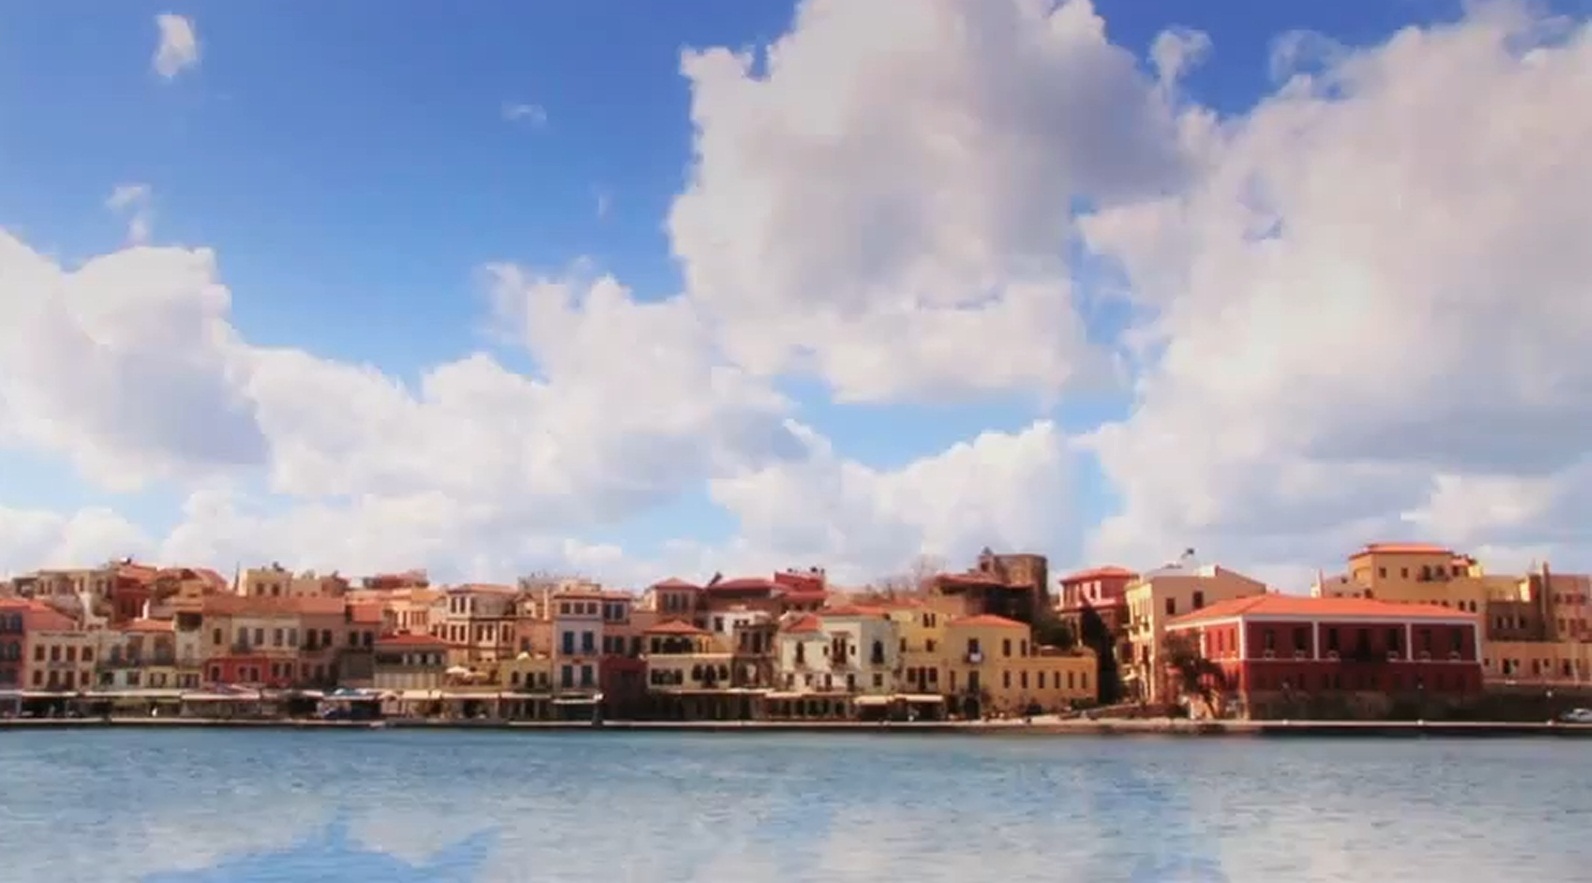 Κρήτη: Δείτε την σε 30 δευτερόλεπτα – Εντυπωσιακό βίντεο για τον τουρισμό!